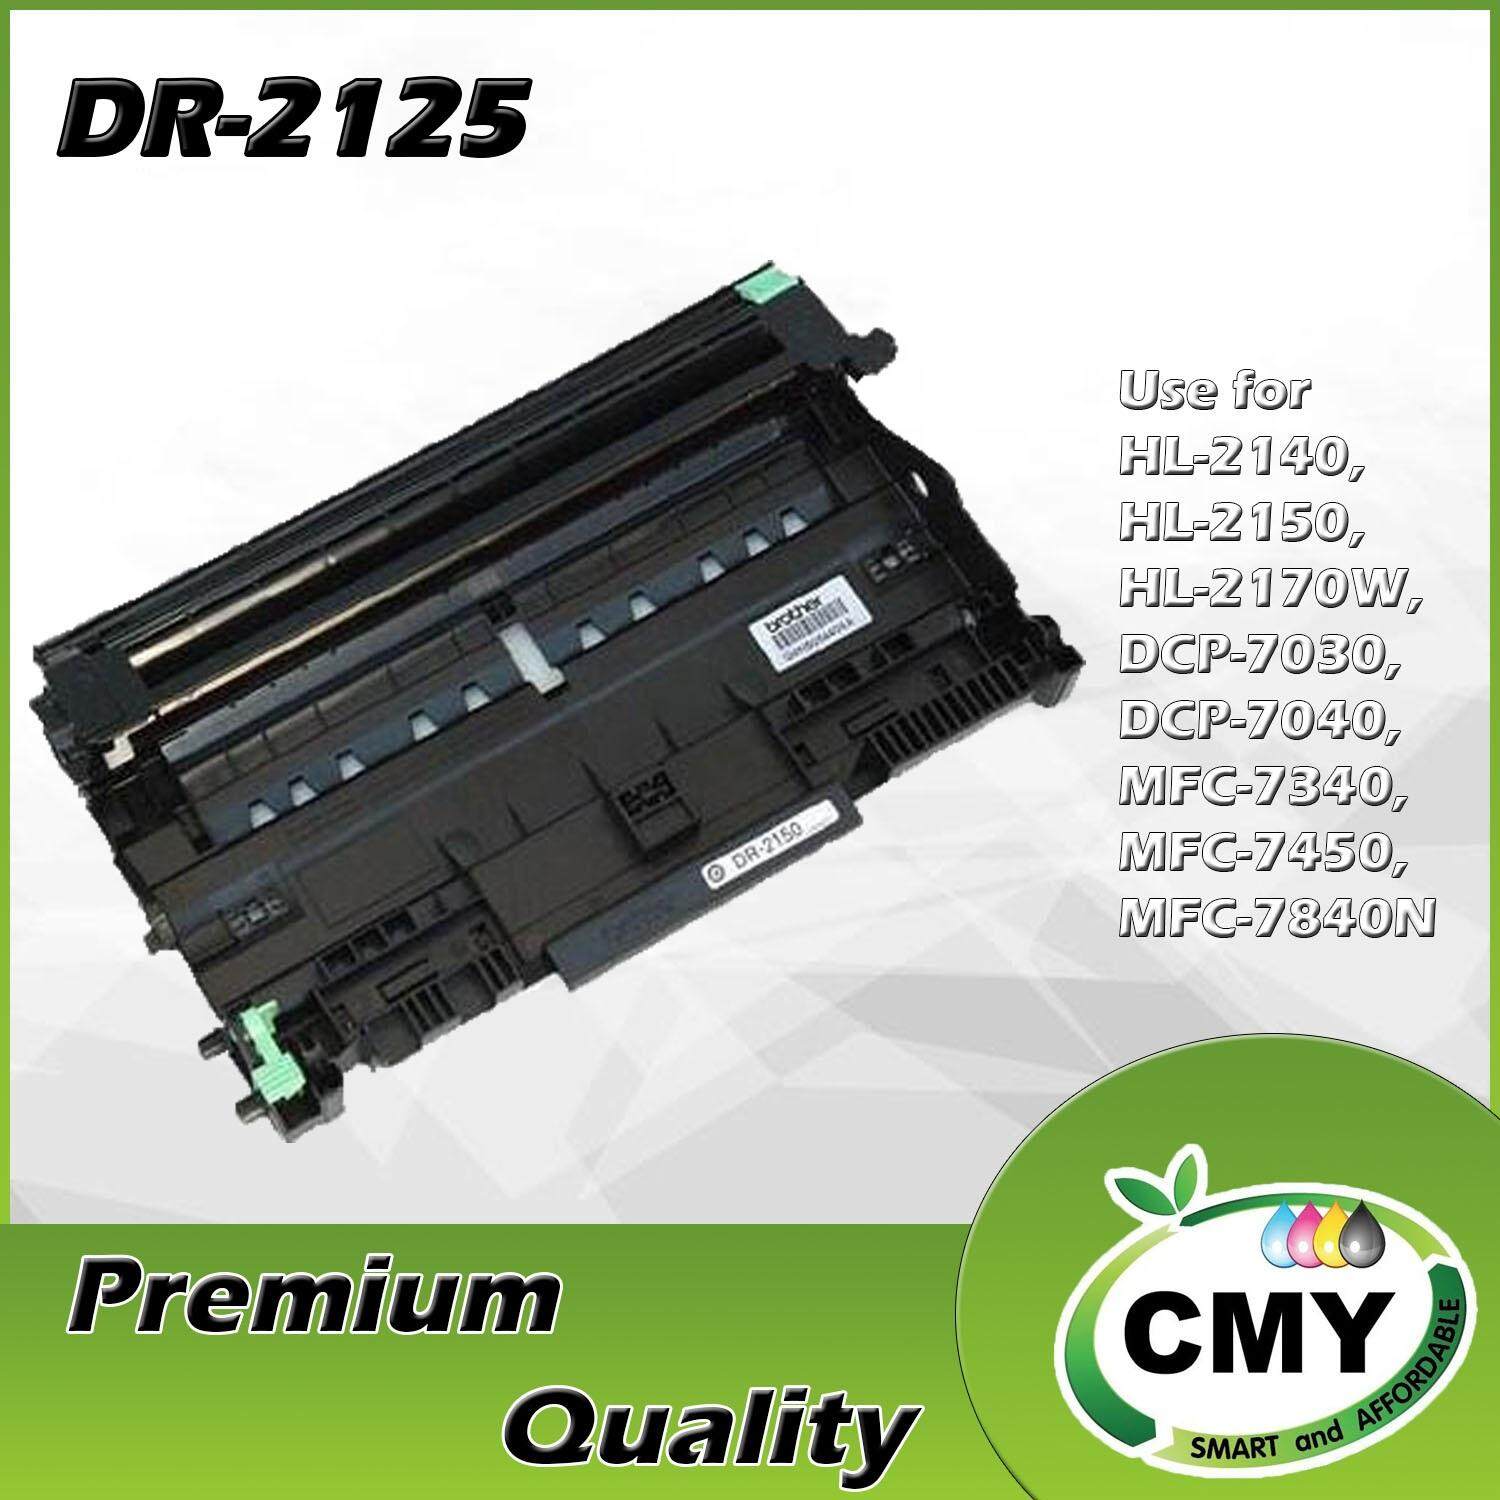 Compatible Laser Drum BR - DR-2125 (Mono/Black) - HL -2140 / 2150N / 2170W / DCP-7030 / 7040 / MFC-7340 / 7440 / 7450 / 7840N Laser Printer - Low Cost & Affordable